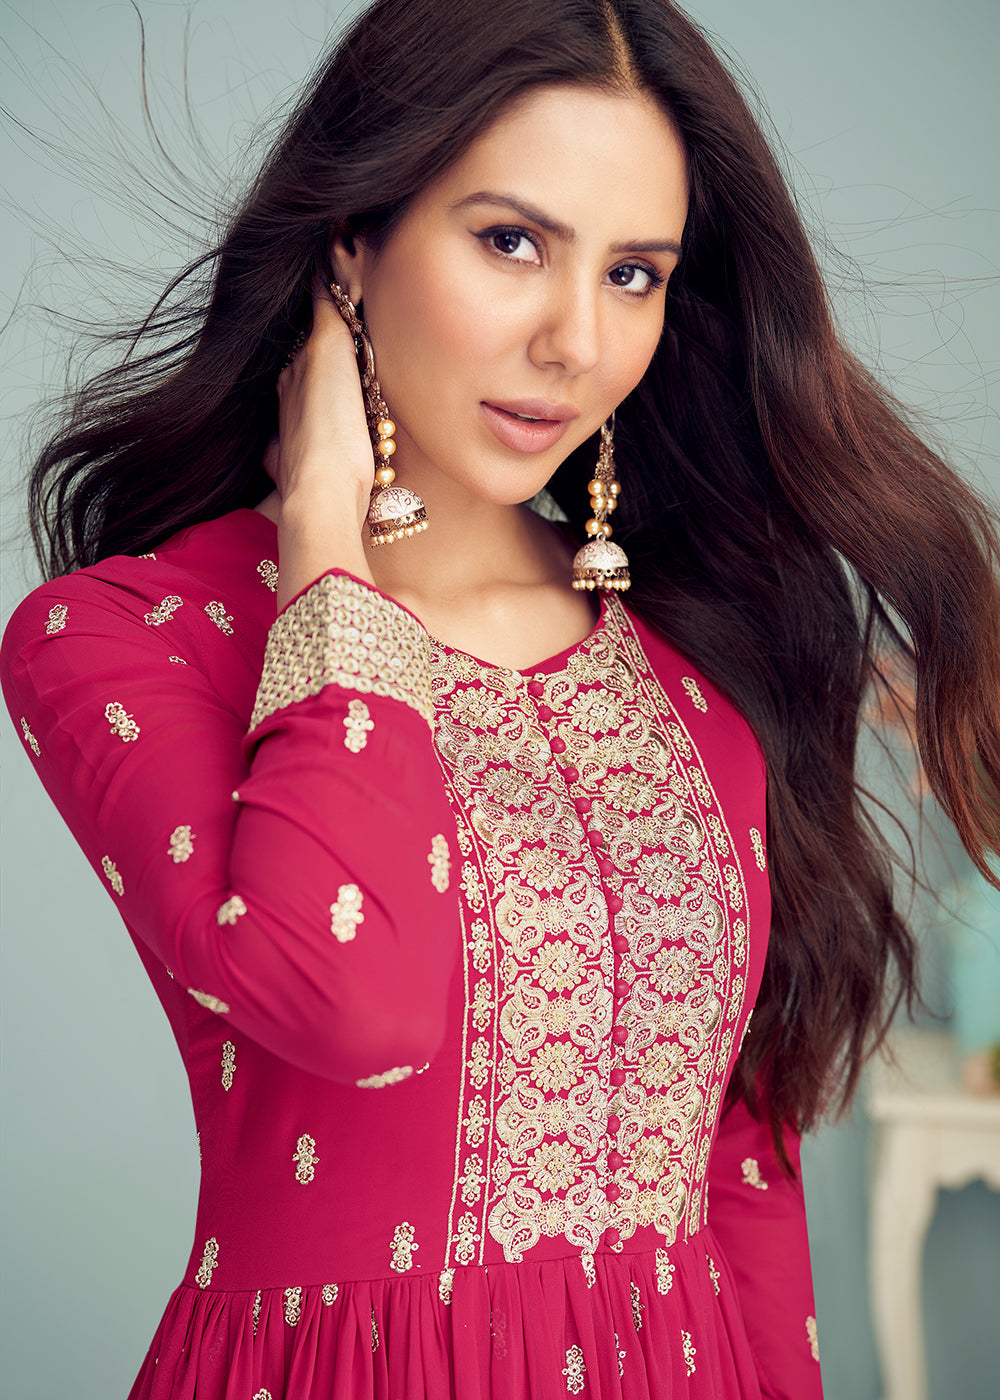 Shop Now Hot Pink Georgette Embellished Wedding Anarkali Suit Online featuring Sonam Bajwa at Empress Clothing in UK.